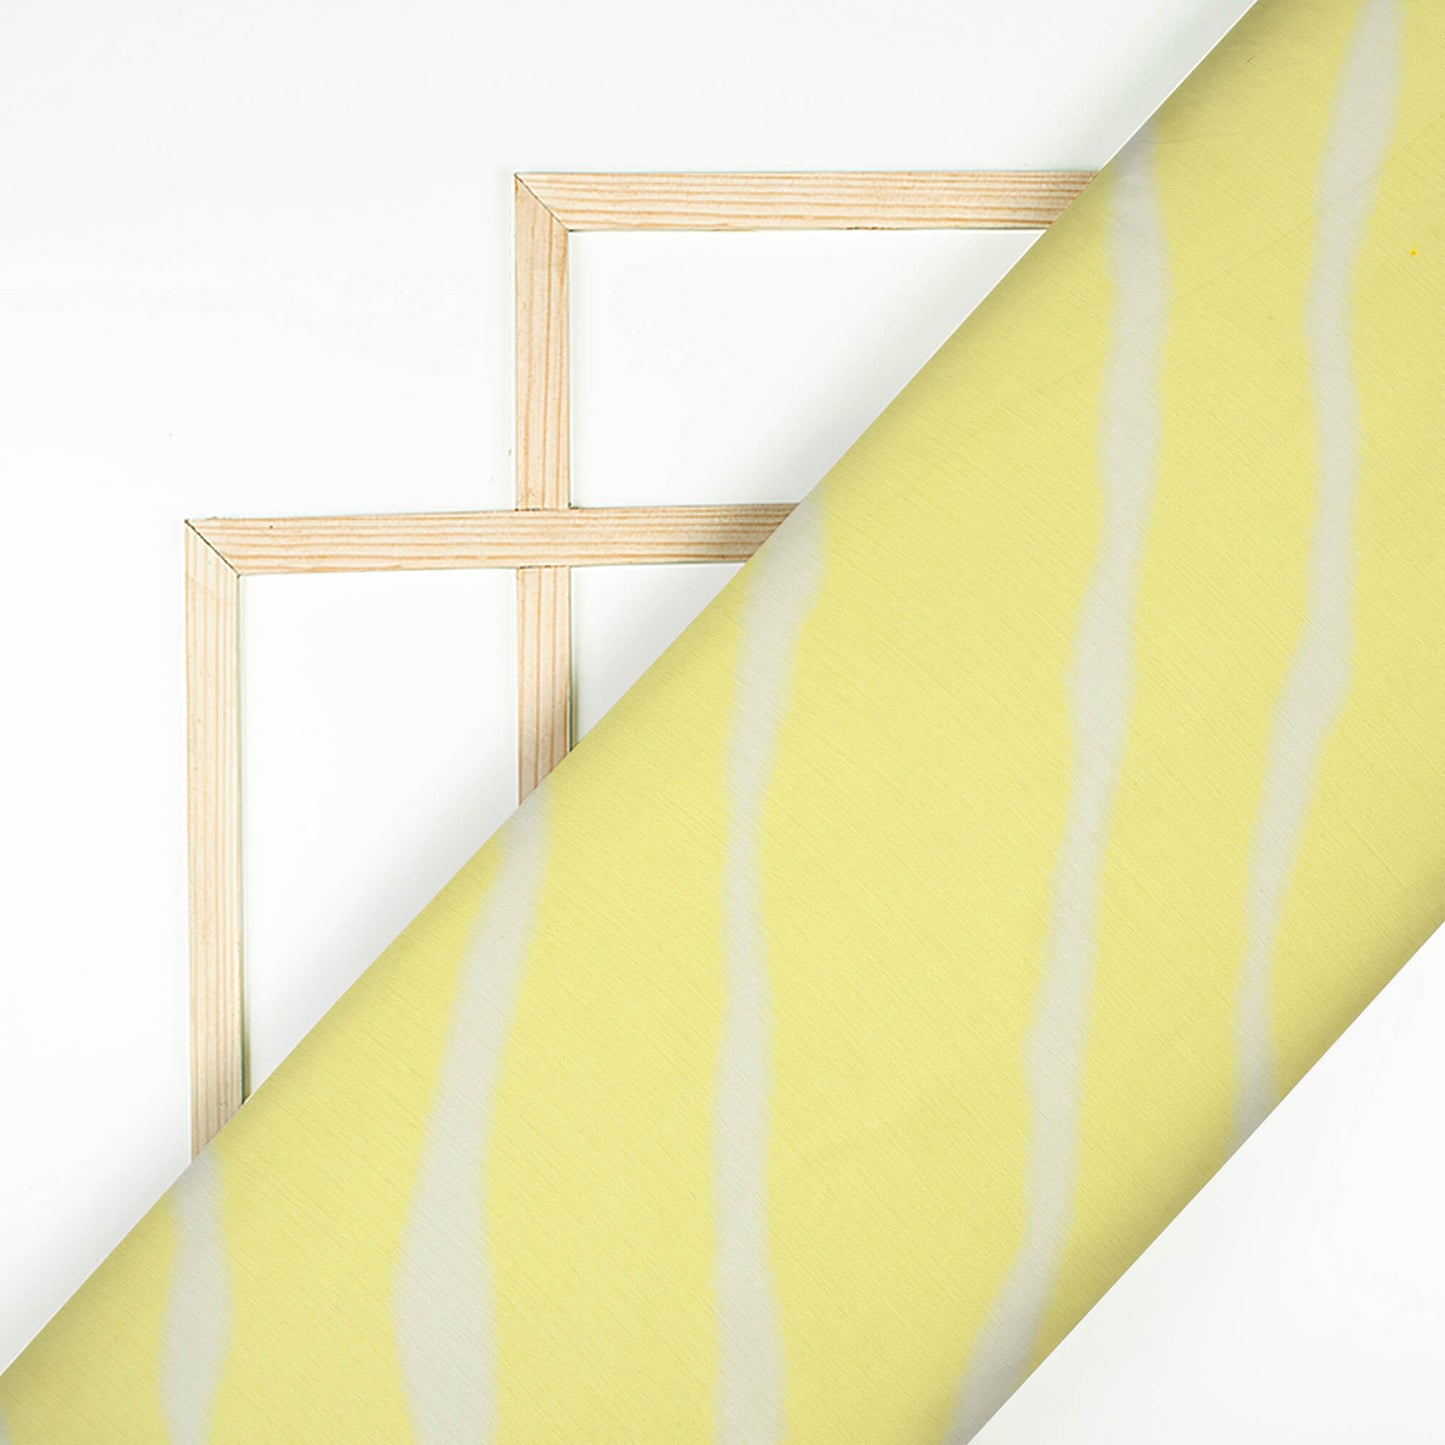 Mellow Yellow And White Leheriya Pattern Digital Print Chiffon Satin Fabric